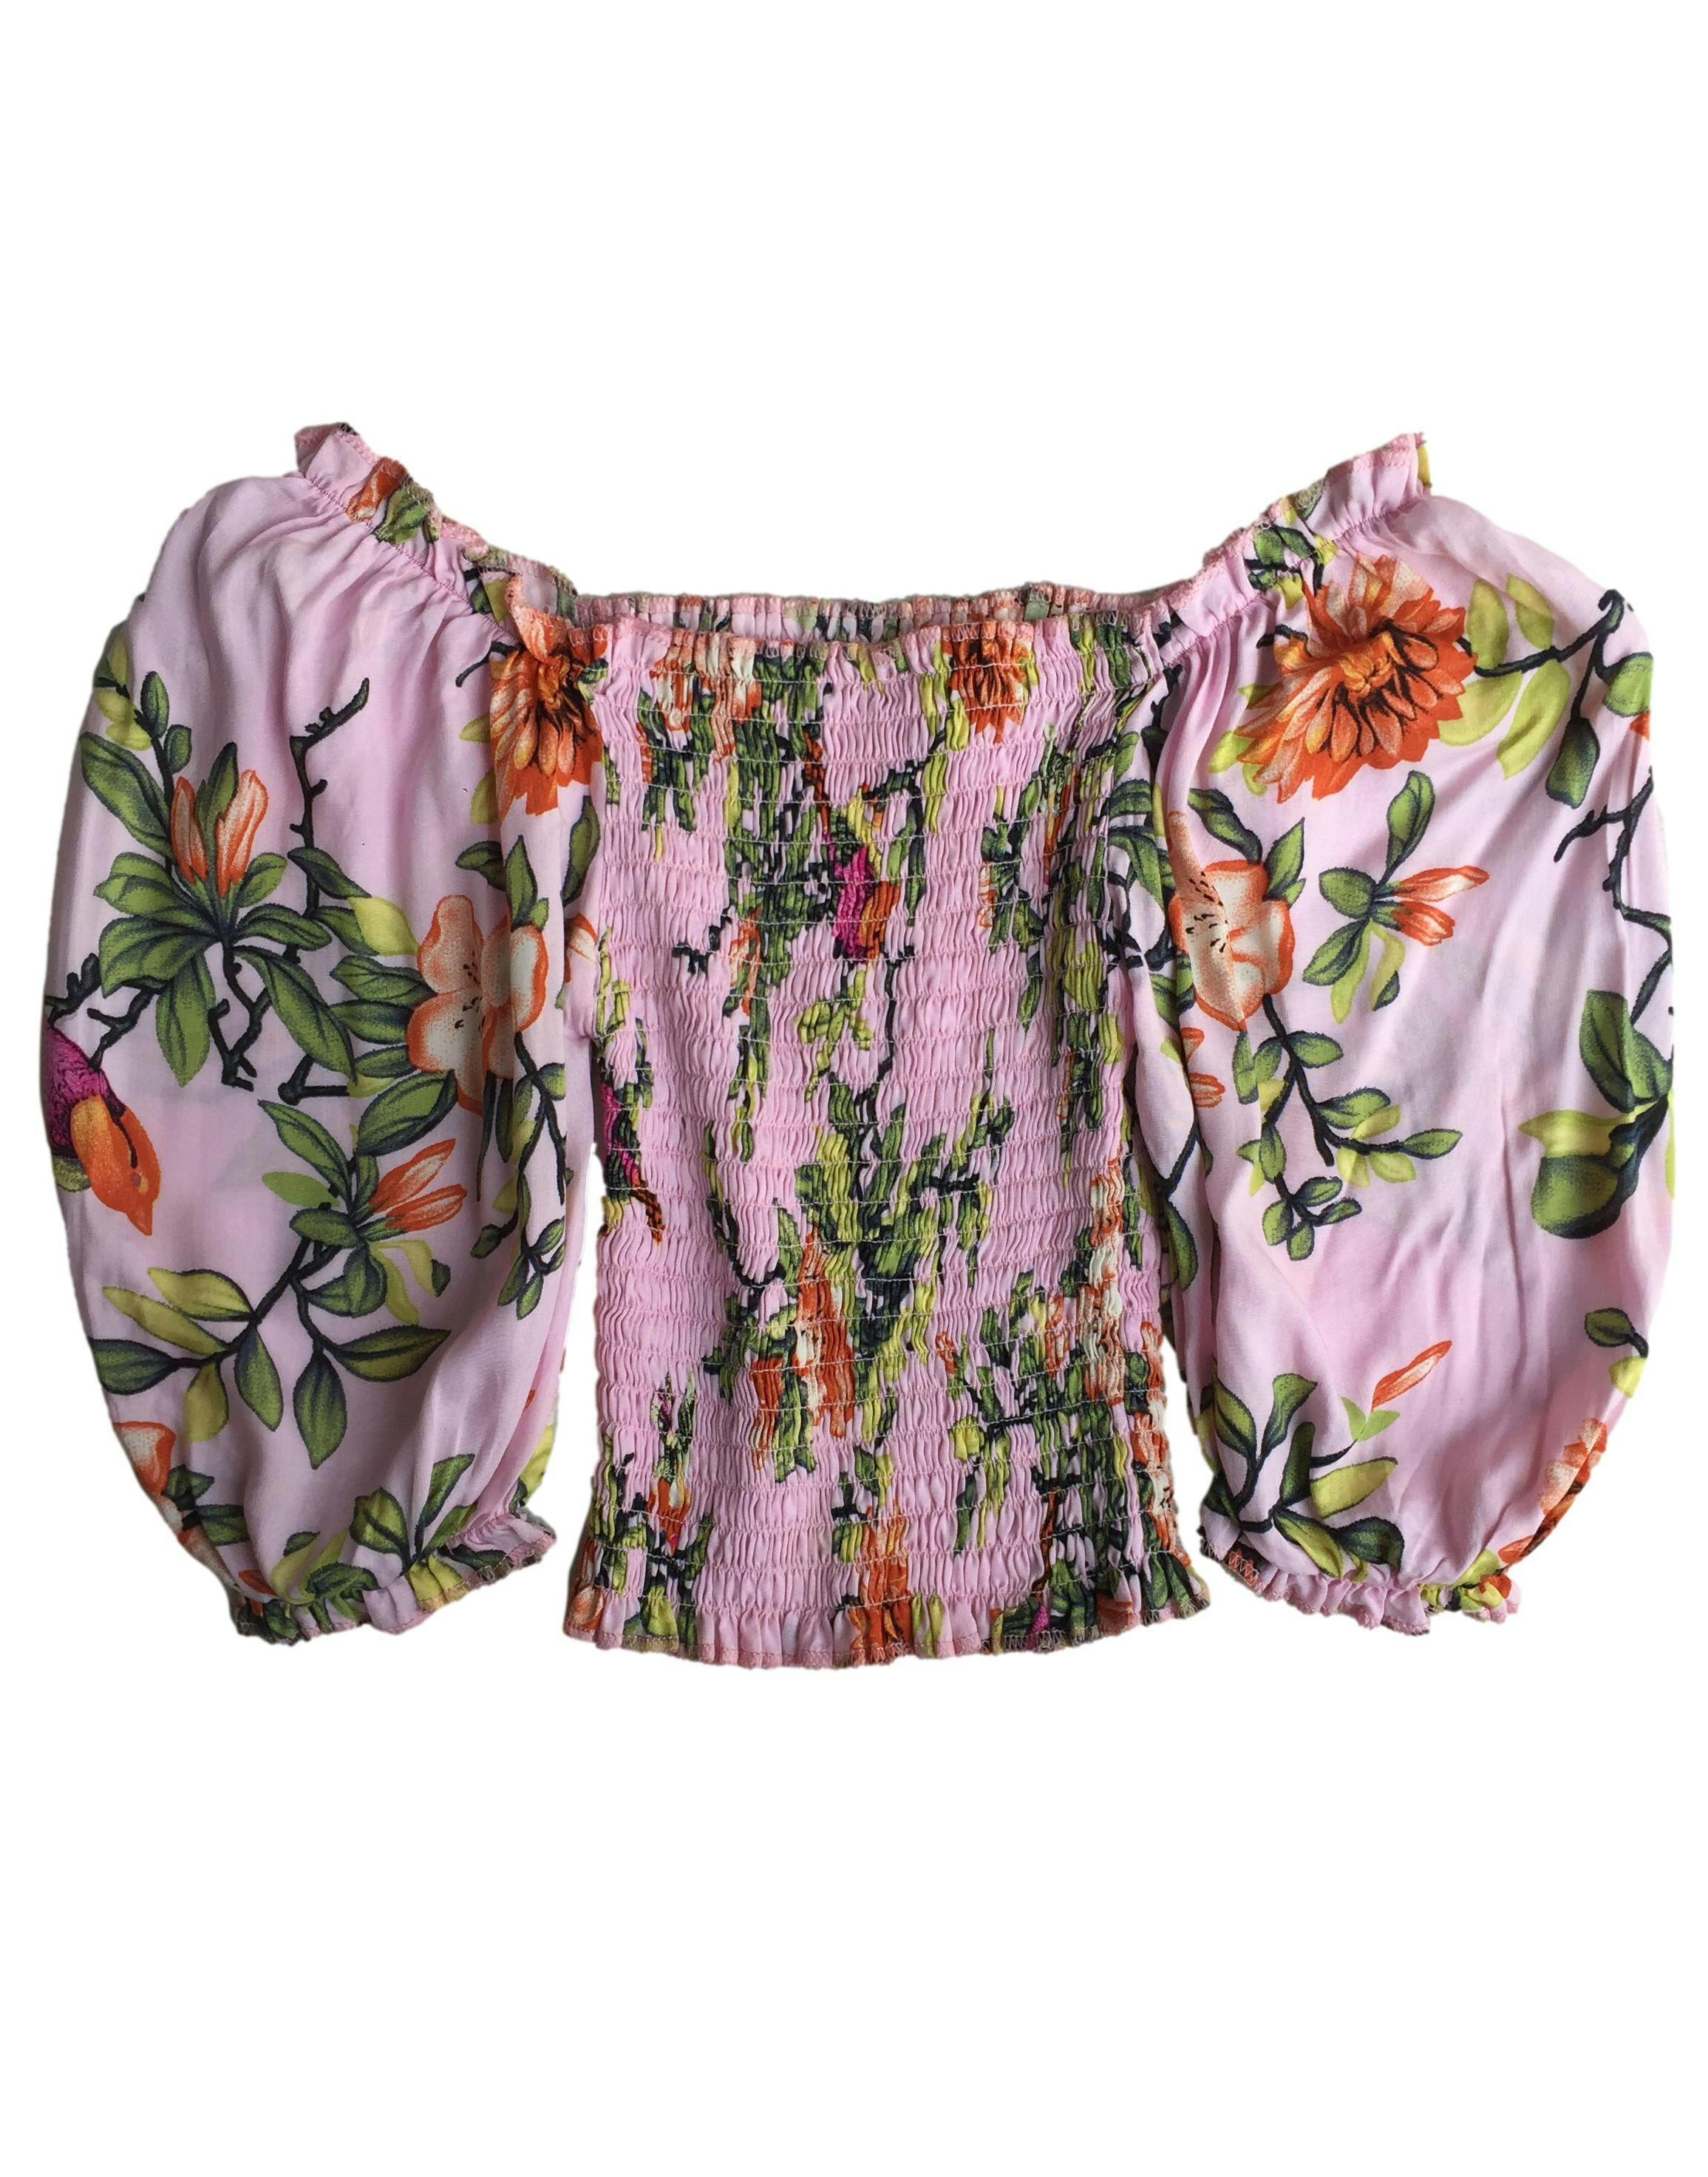 Blusa offshoulder rosada con flores, panal de abeja en el torso. Busto: 40cm (sin estirar), Largo: 30cm.